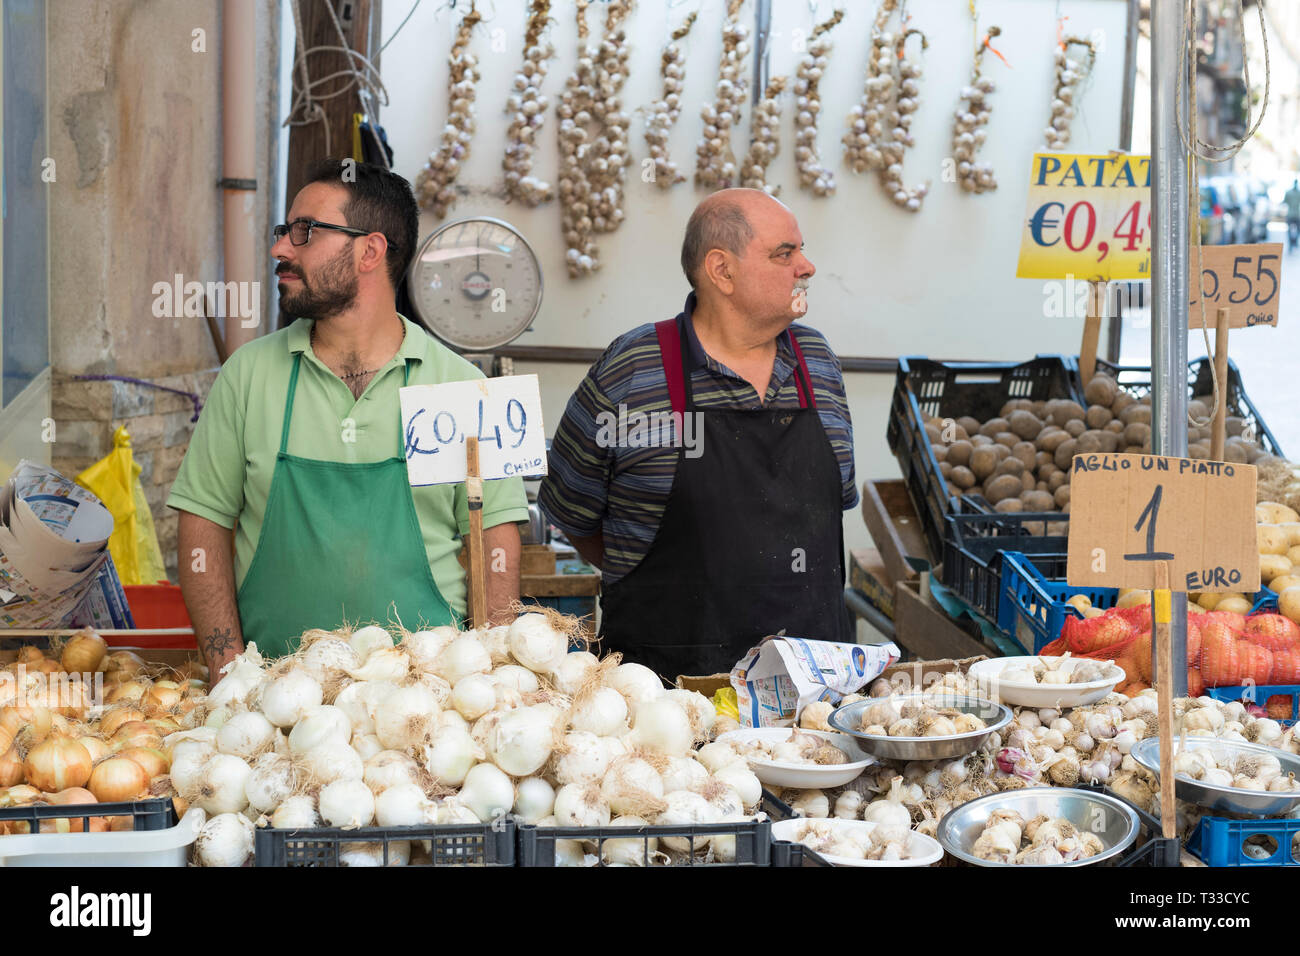 Vendita Stallholders cipolle, aglio, patate al famoso Ballero street market per le verdure e il cibo fresco, Palermo, Sicilia, Italia Foto Stock